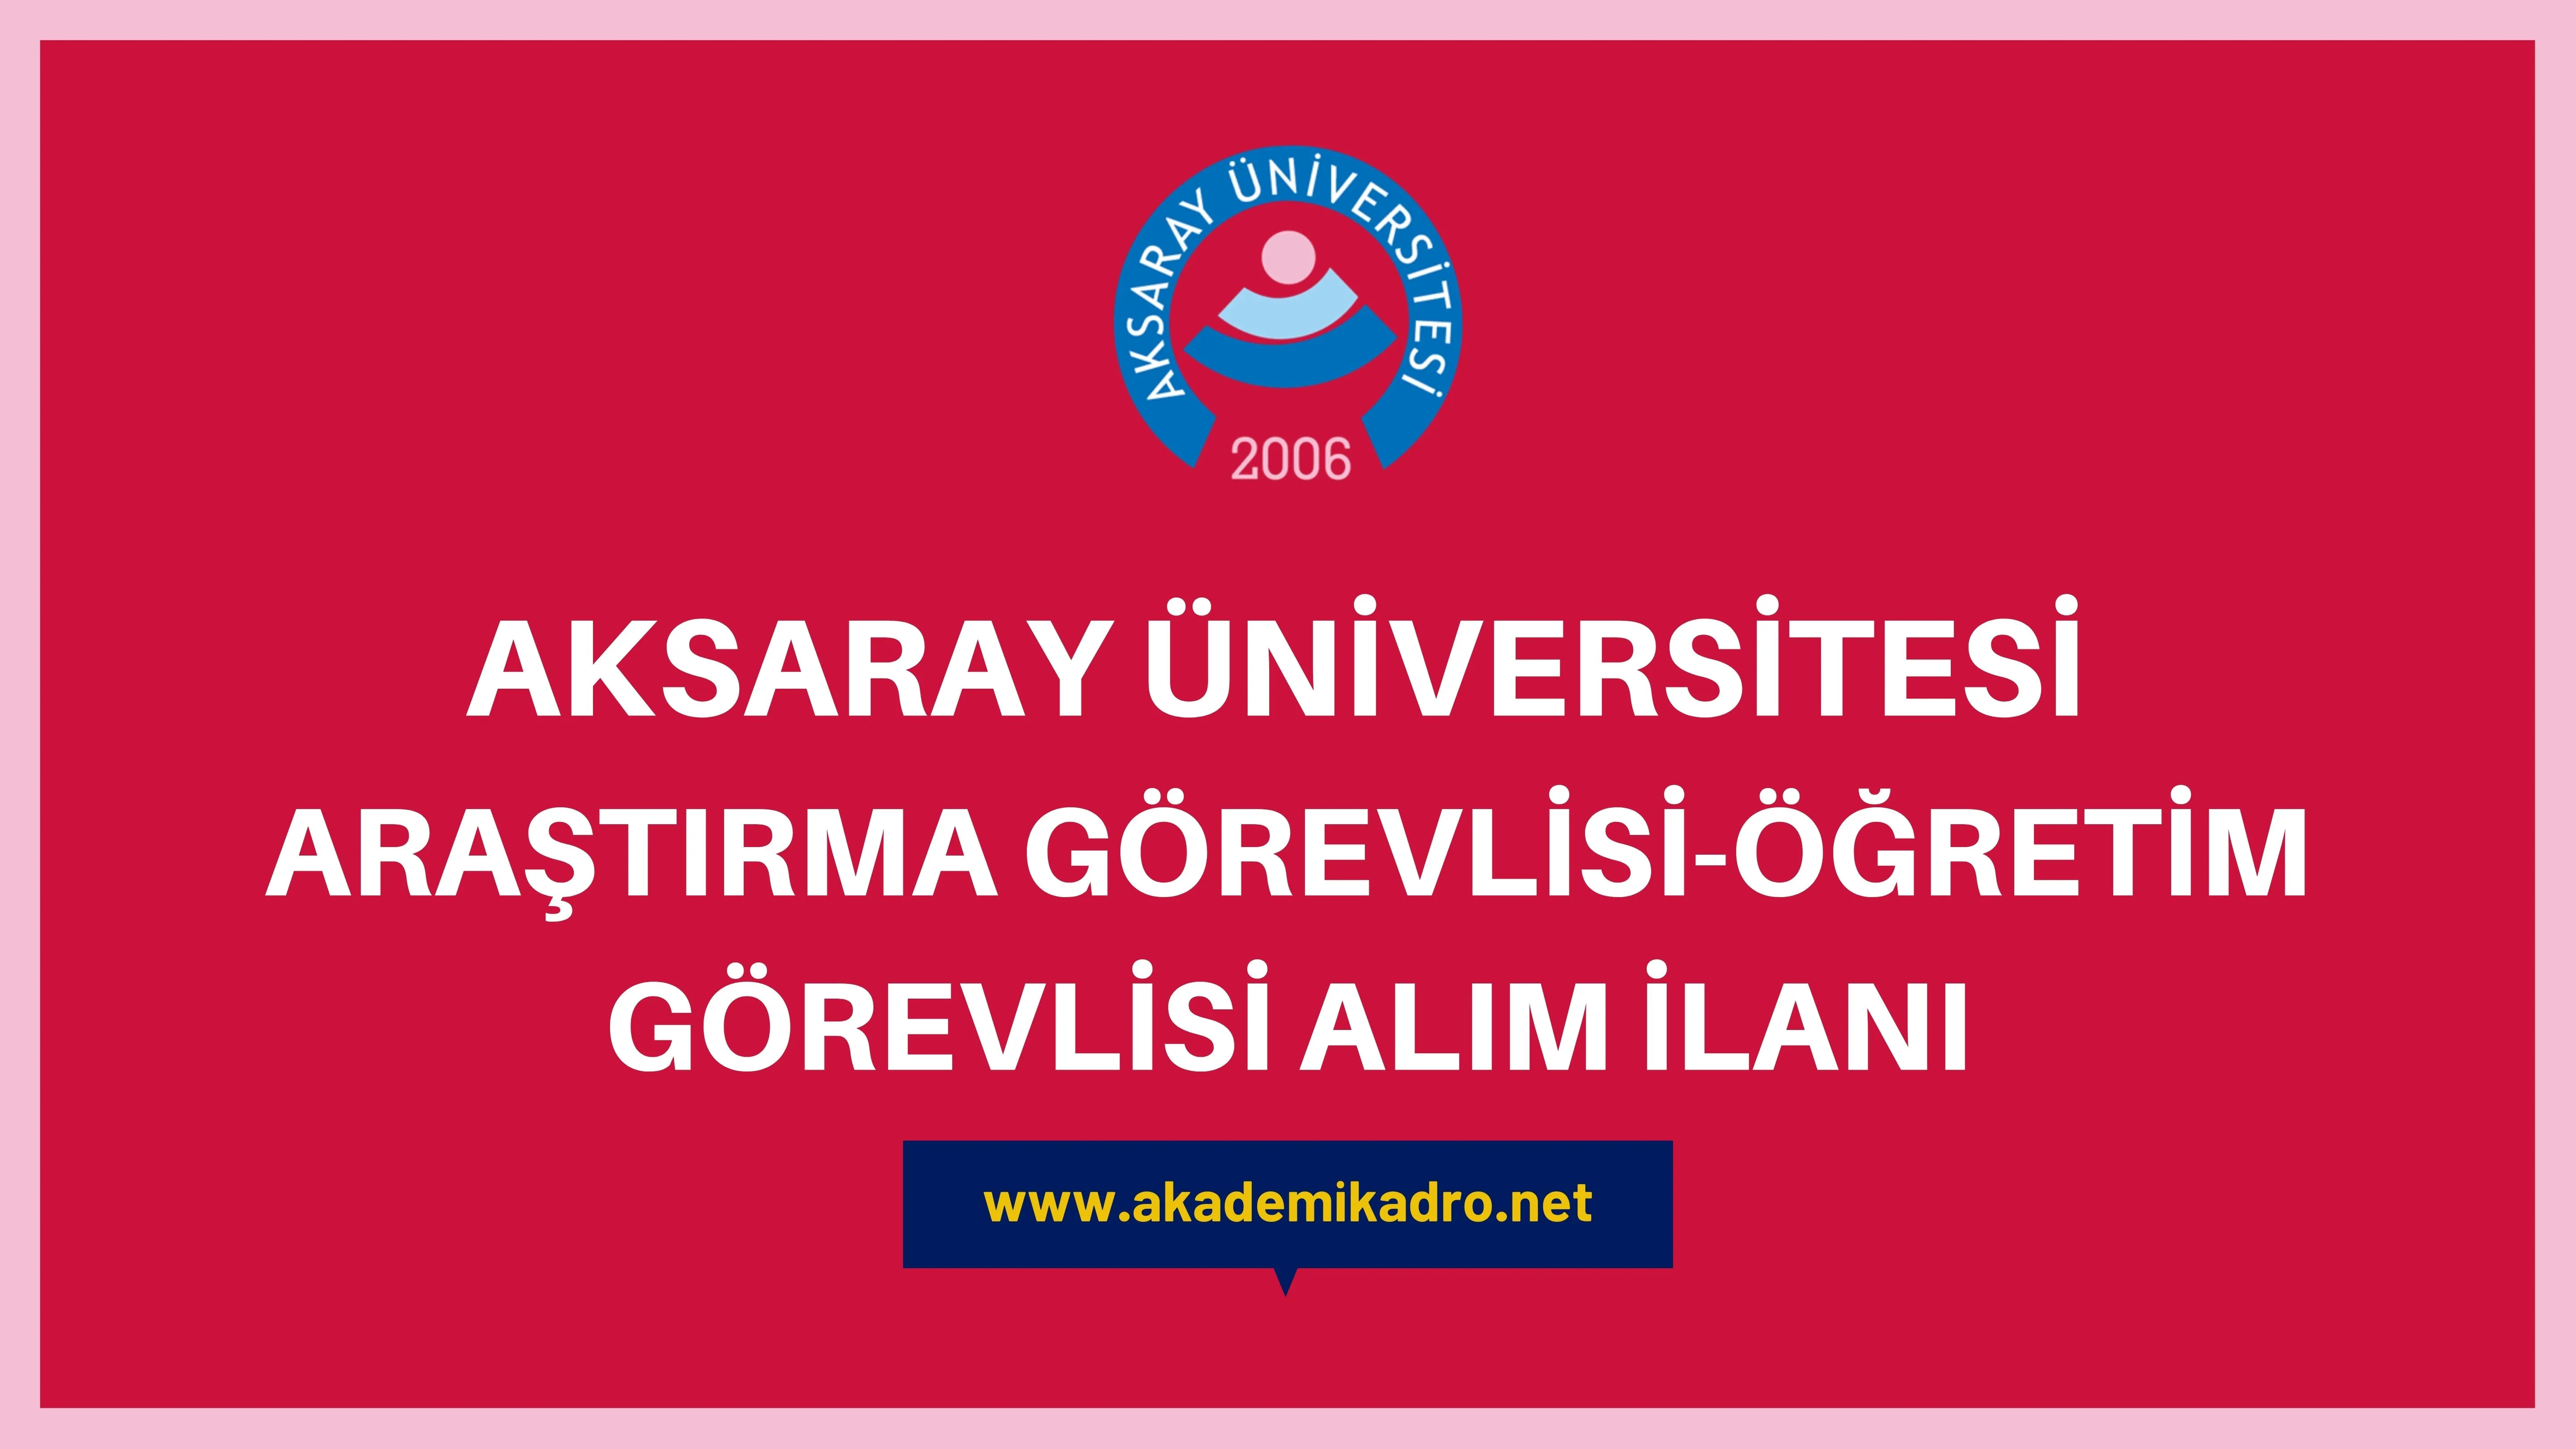 Aksaray Üniversitesi 2 Araştırma görevlisi ve 2 Öğretim görevlisi alacak.